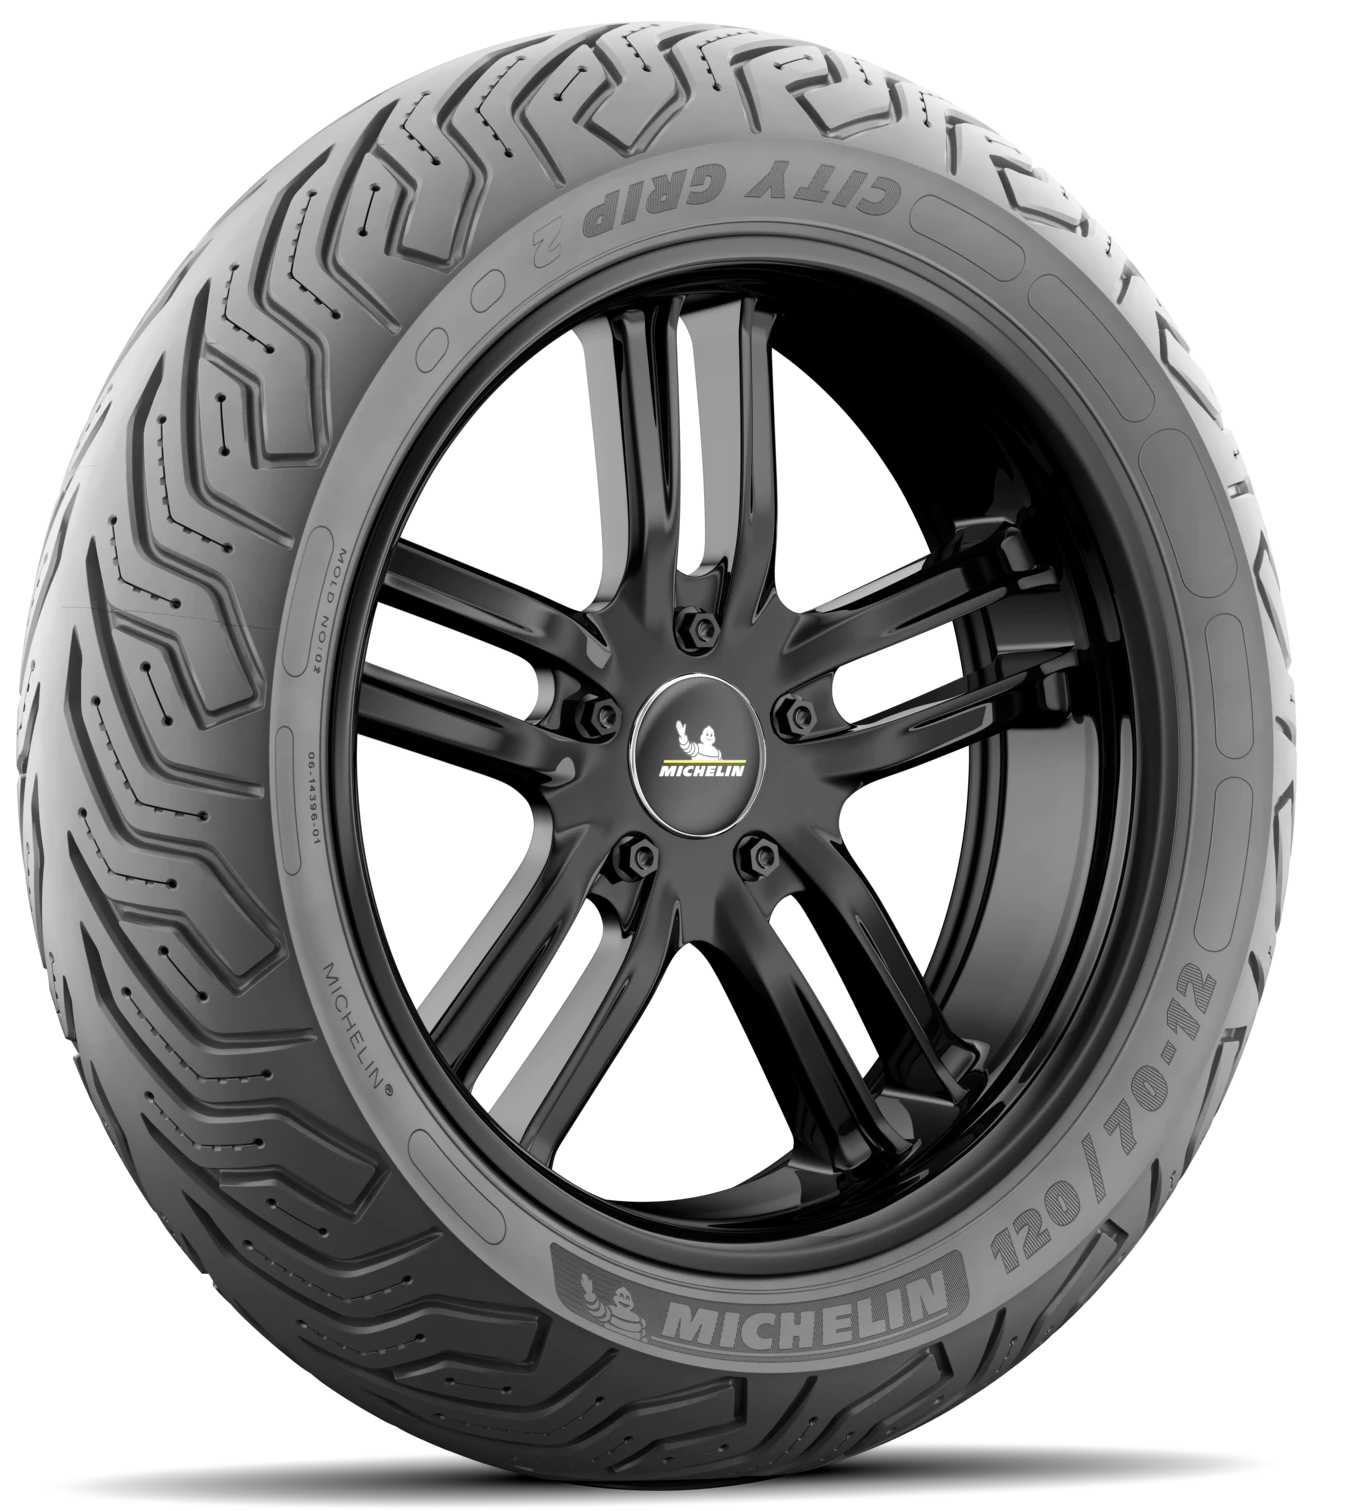 Michelin Tire 120 80-16 TL 60p City Grip 2 Front Retro